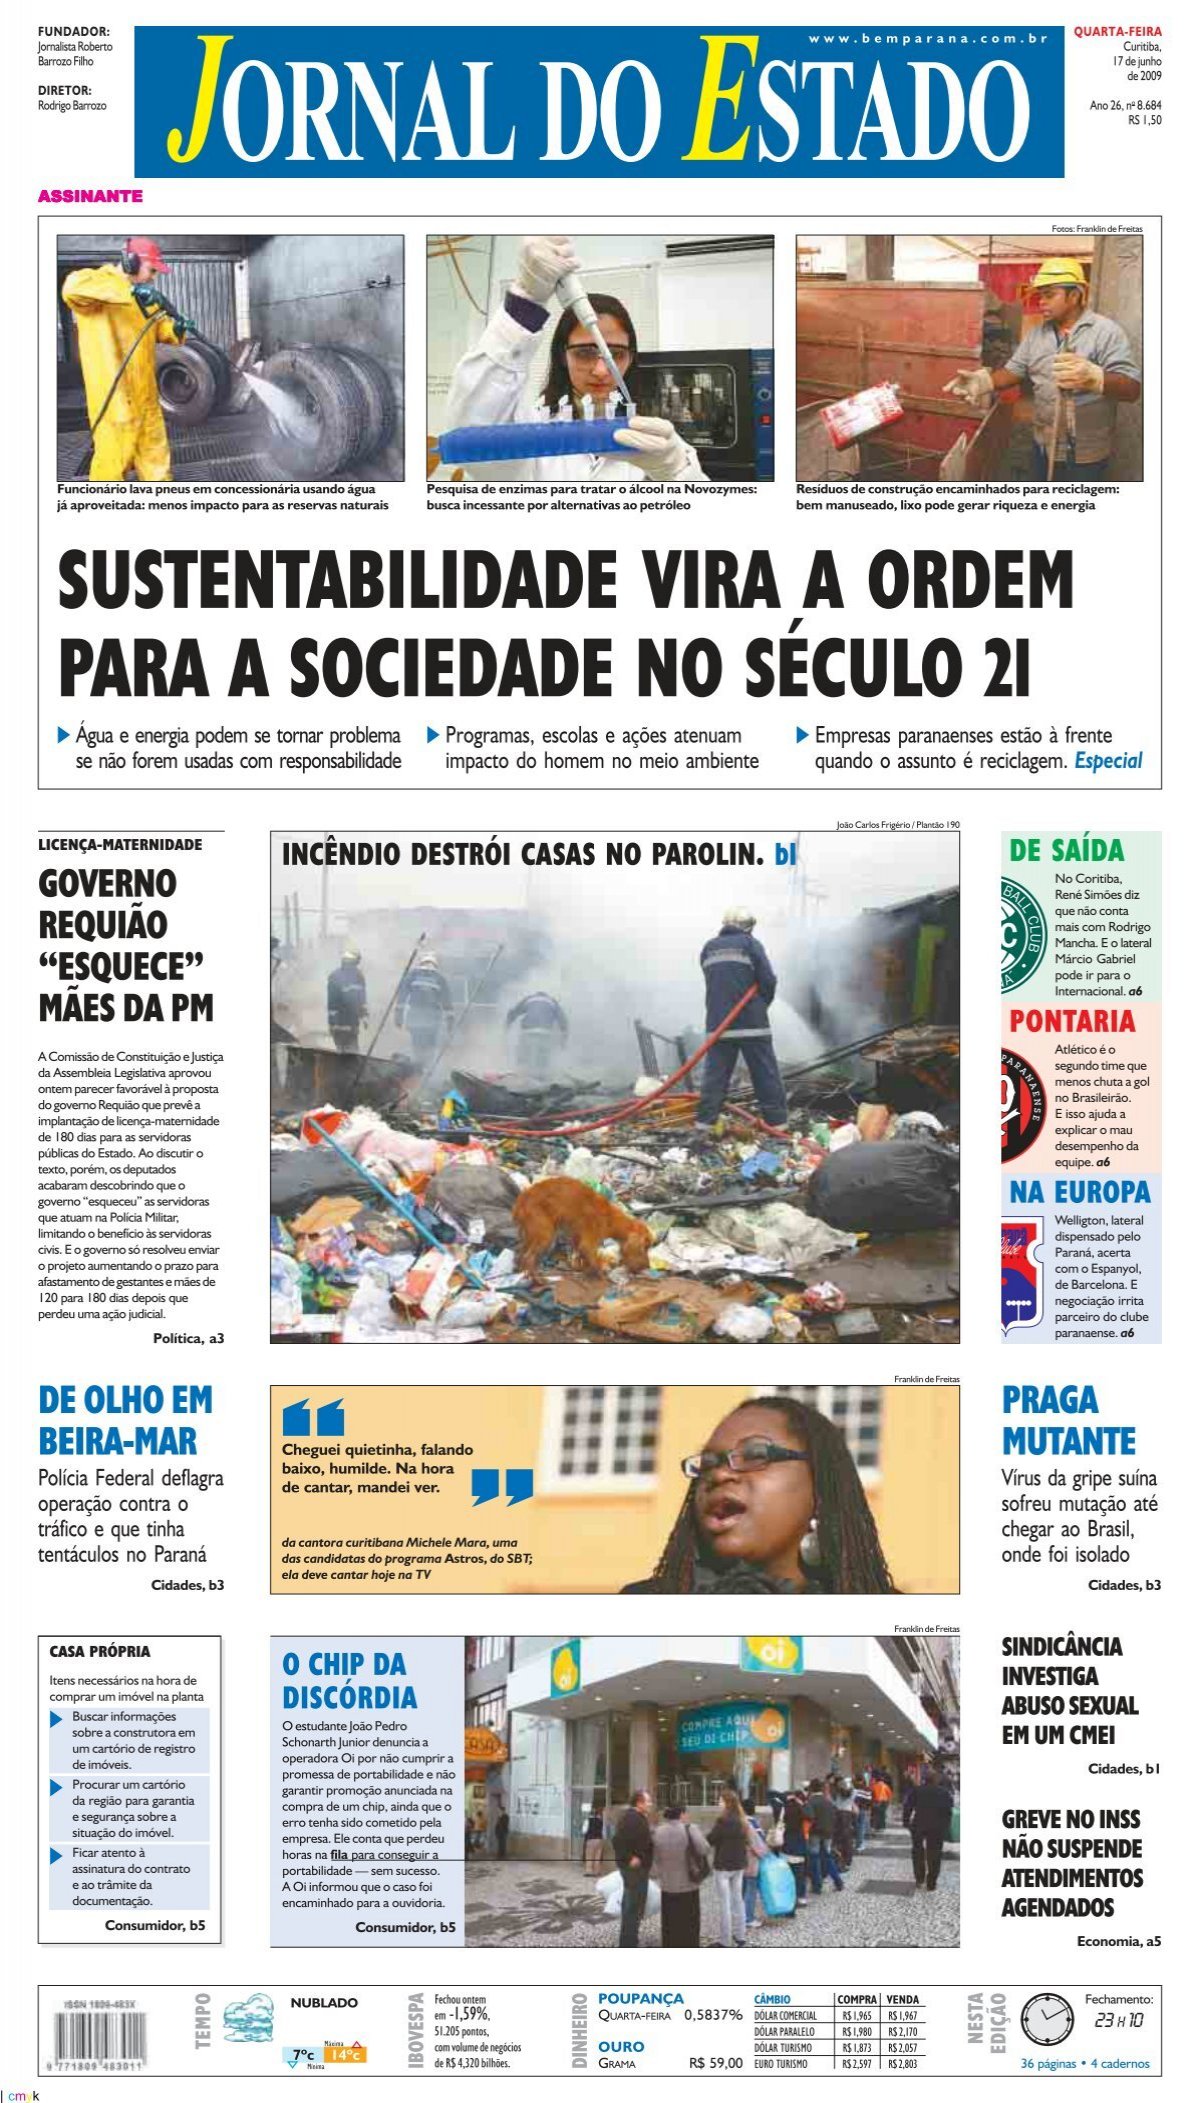 Papel de Parede do Palmeiras (Wallpapers) Baixar Grátis - Nação Palmeirense  - Blog da Torcida Palmeirense